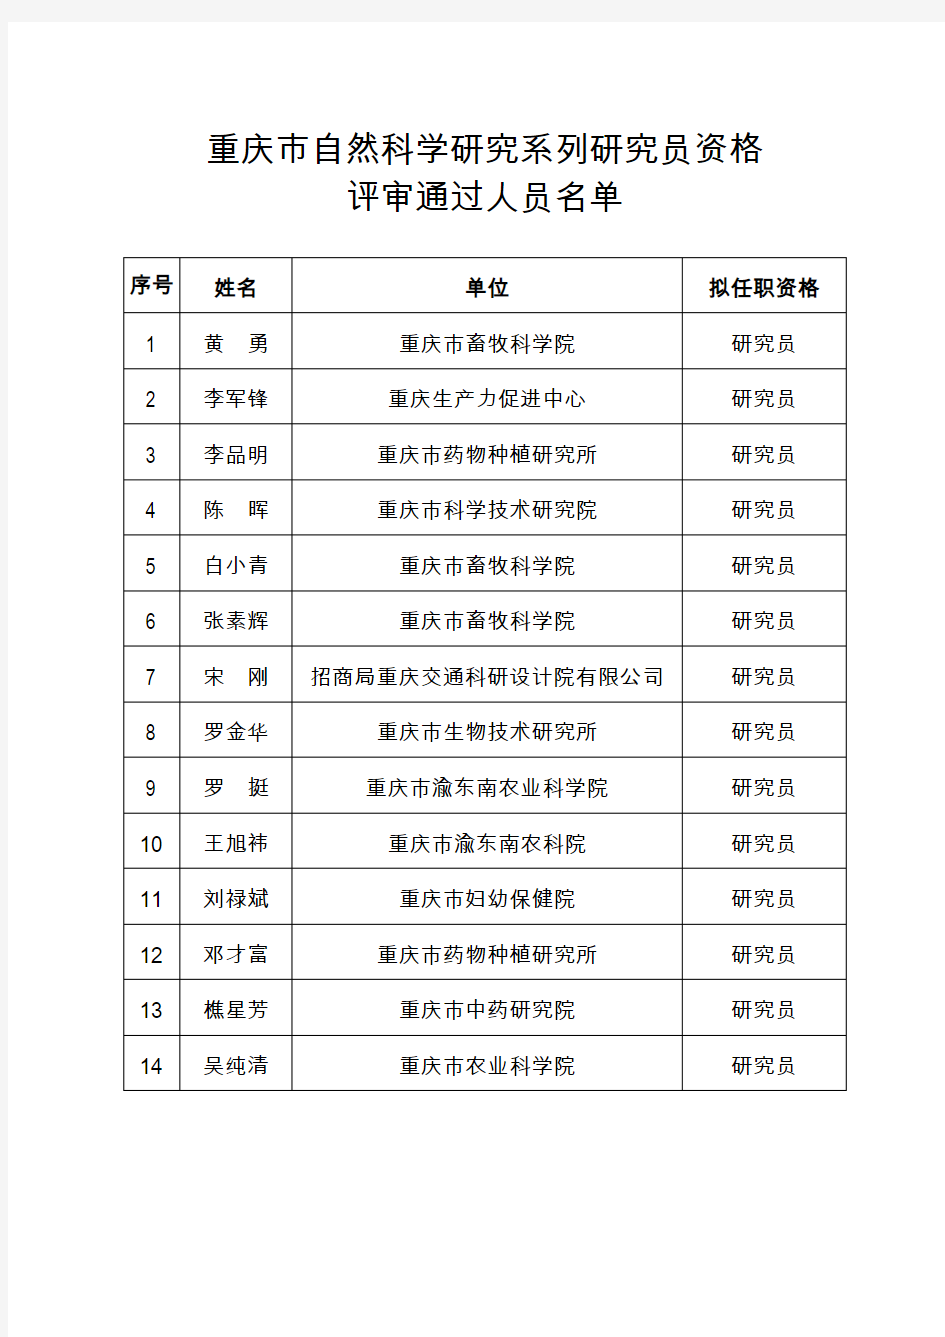 重庆市自然科学研究系列研究员资格